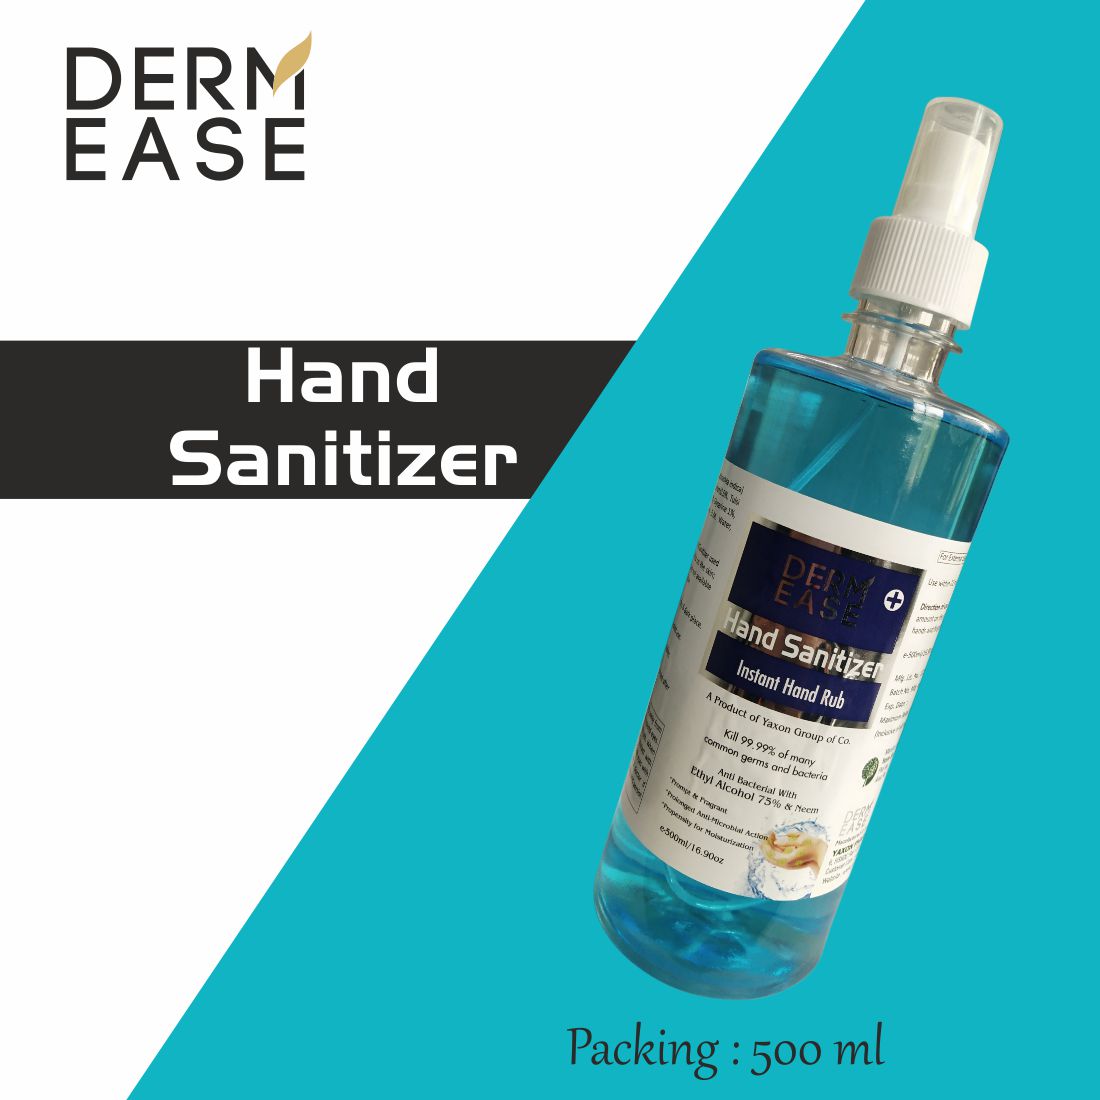 DERM EASE MIST PUMP SPRAY Hand Sanitizer 500ml